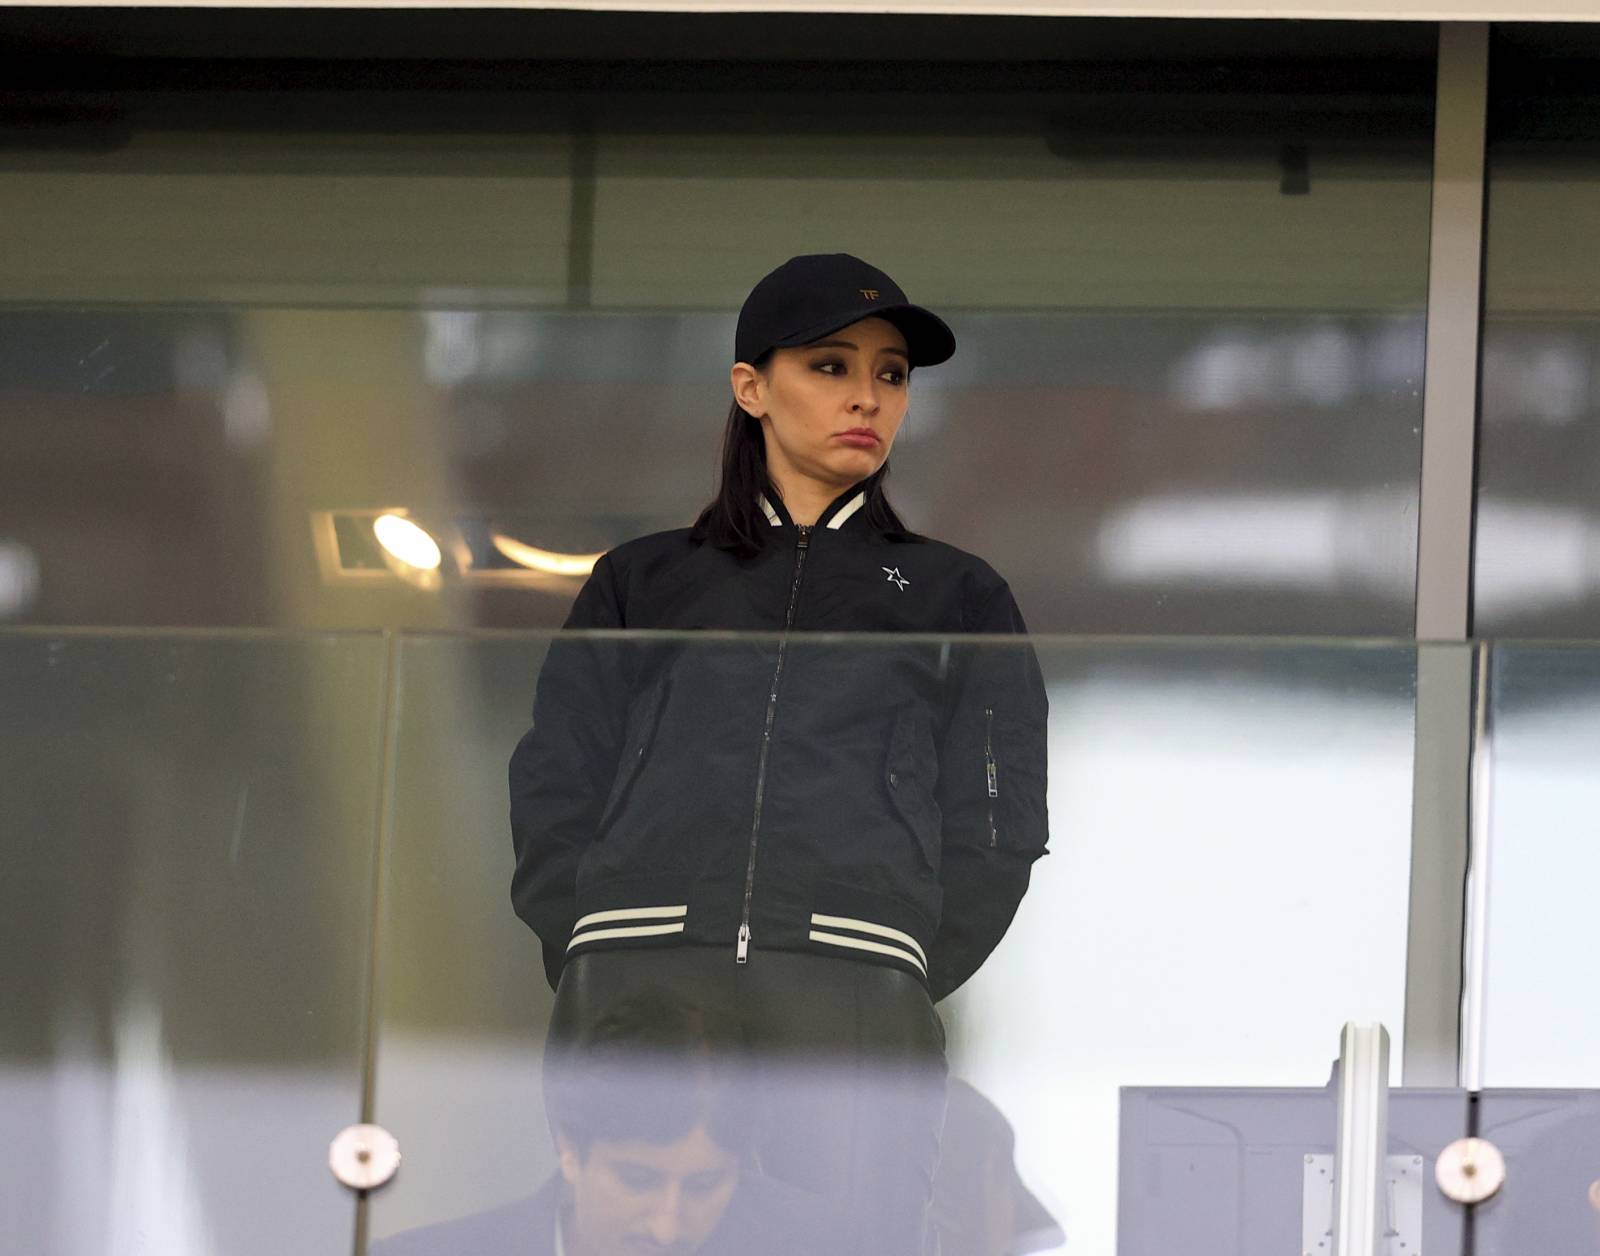 Российская газета анонсировал Суперкубок России провокационной обложкой с женщиной в БДСМ-наряде, в которой читатели увидели Зарему